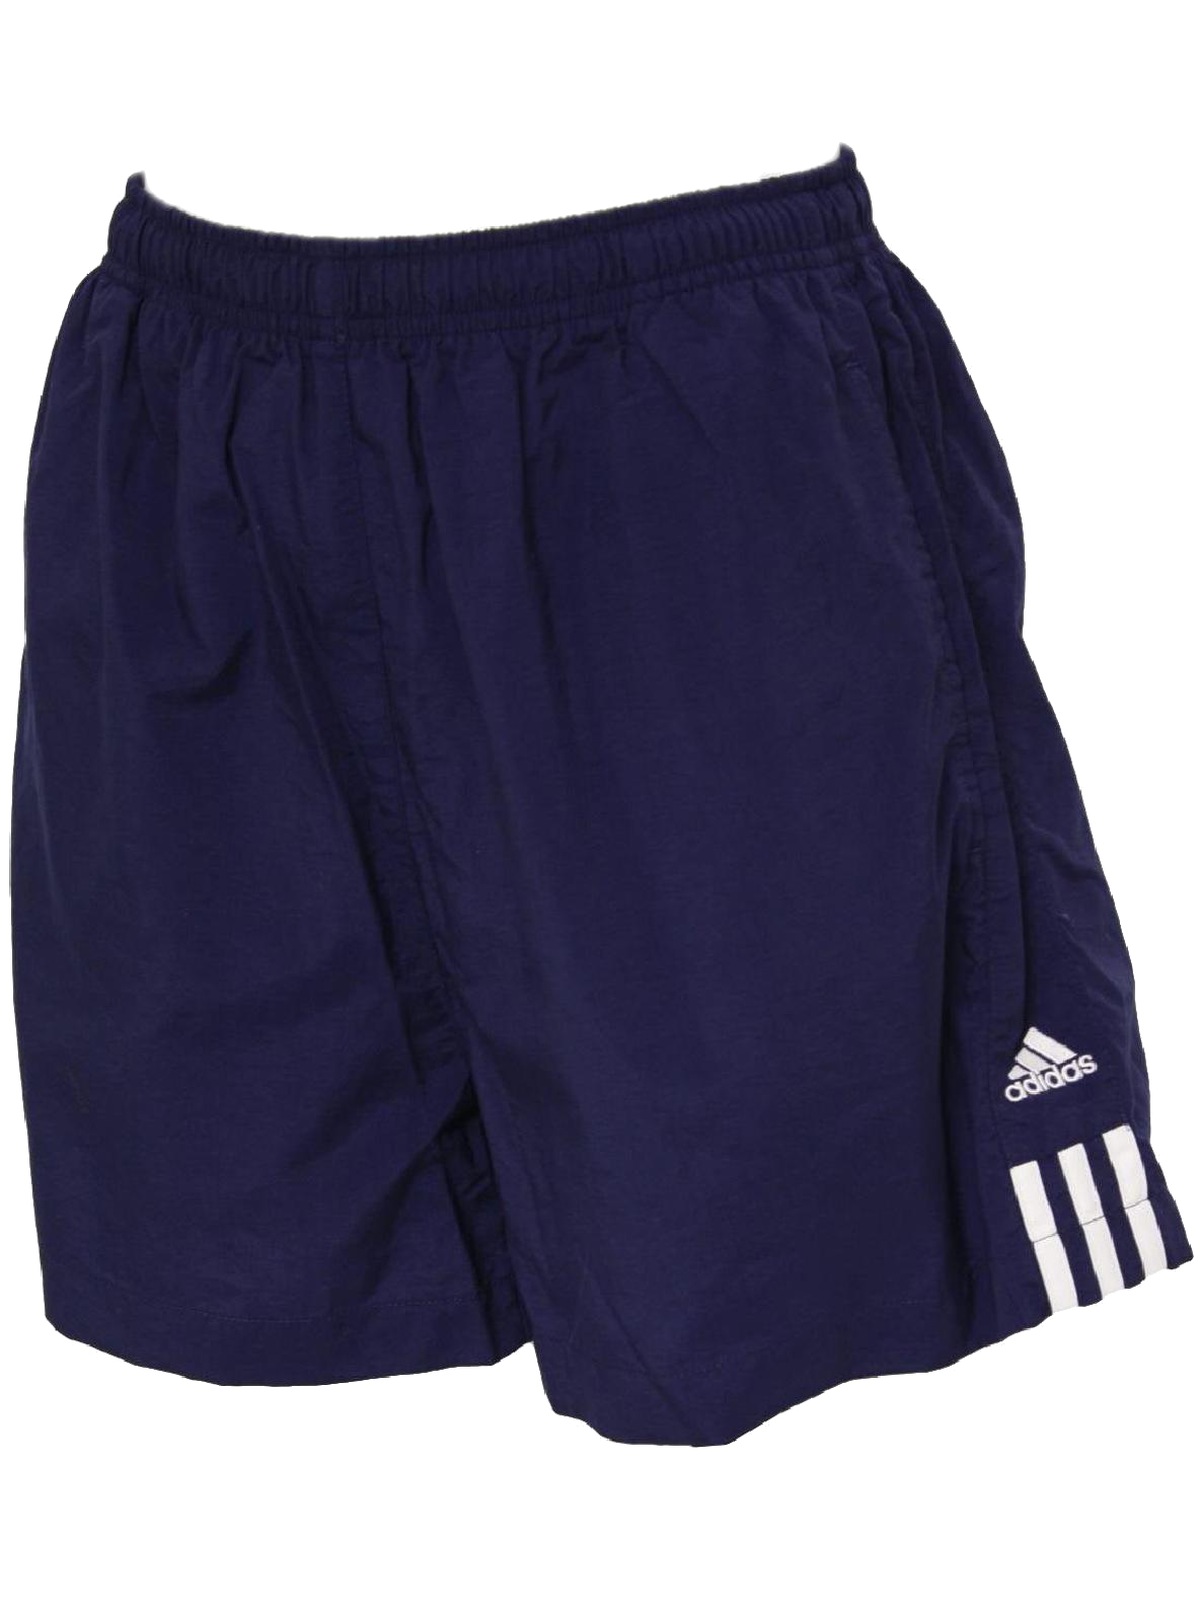 Vintage 1990's Shorts: 90s -Adidas- Unisex navy blue nylon crinkle ...